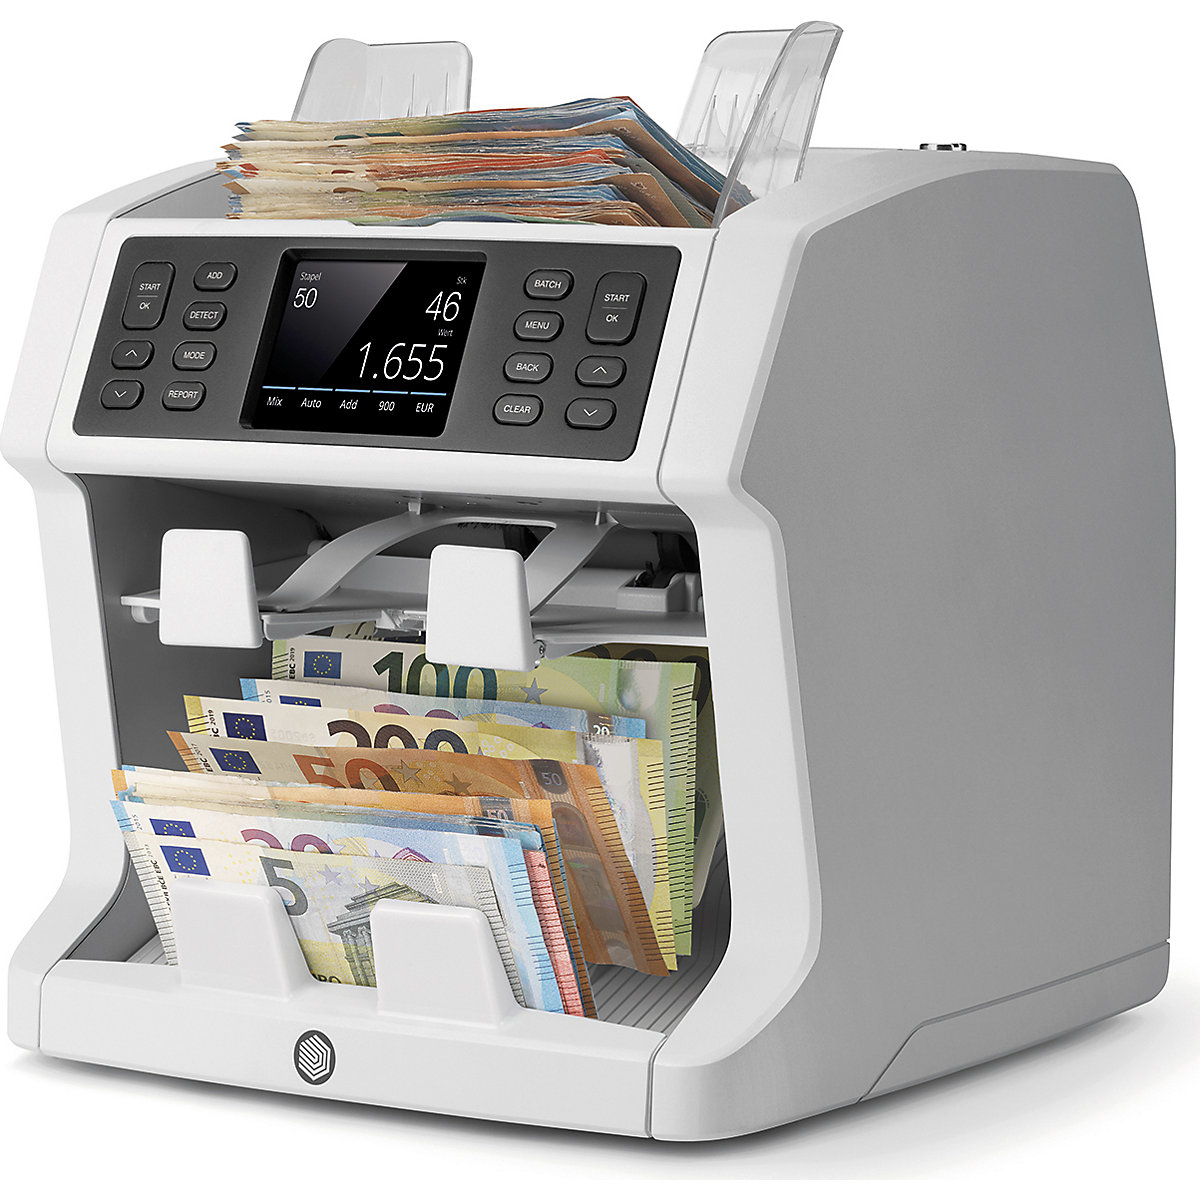 Compteuse de monnaie avec comptage non trié et fonction de tri – Safescan